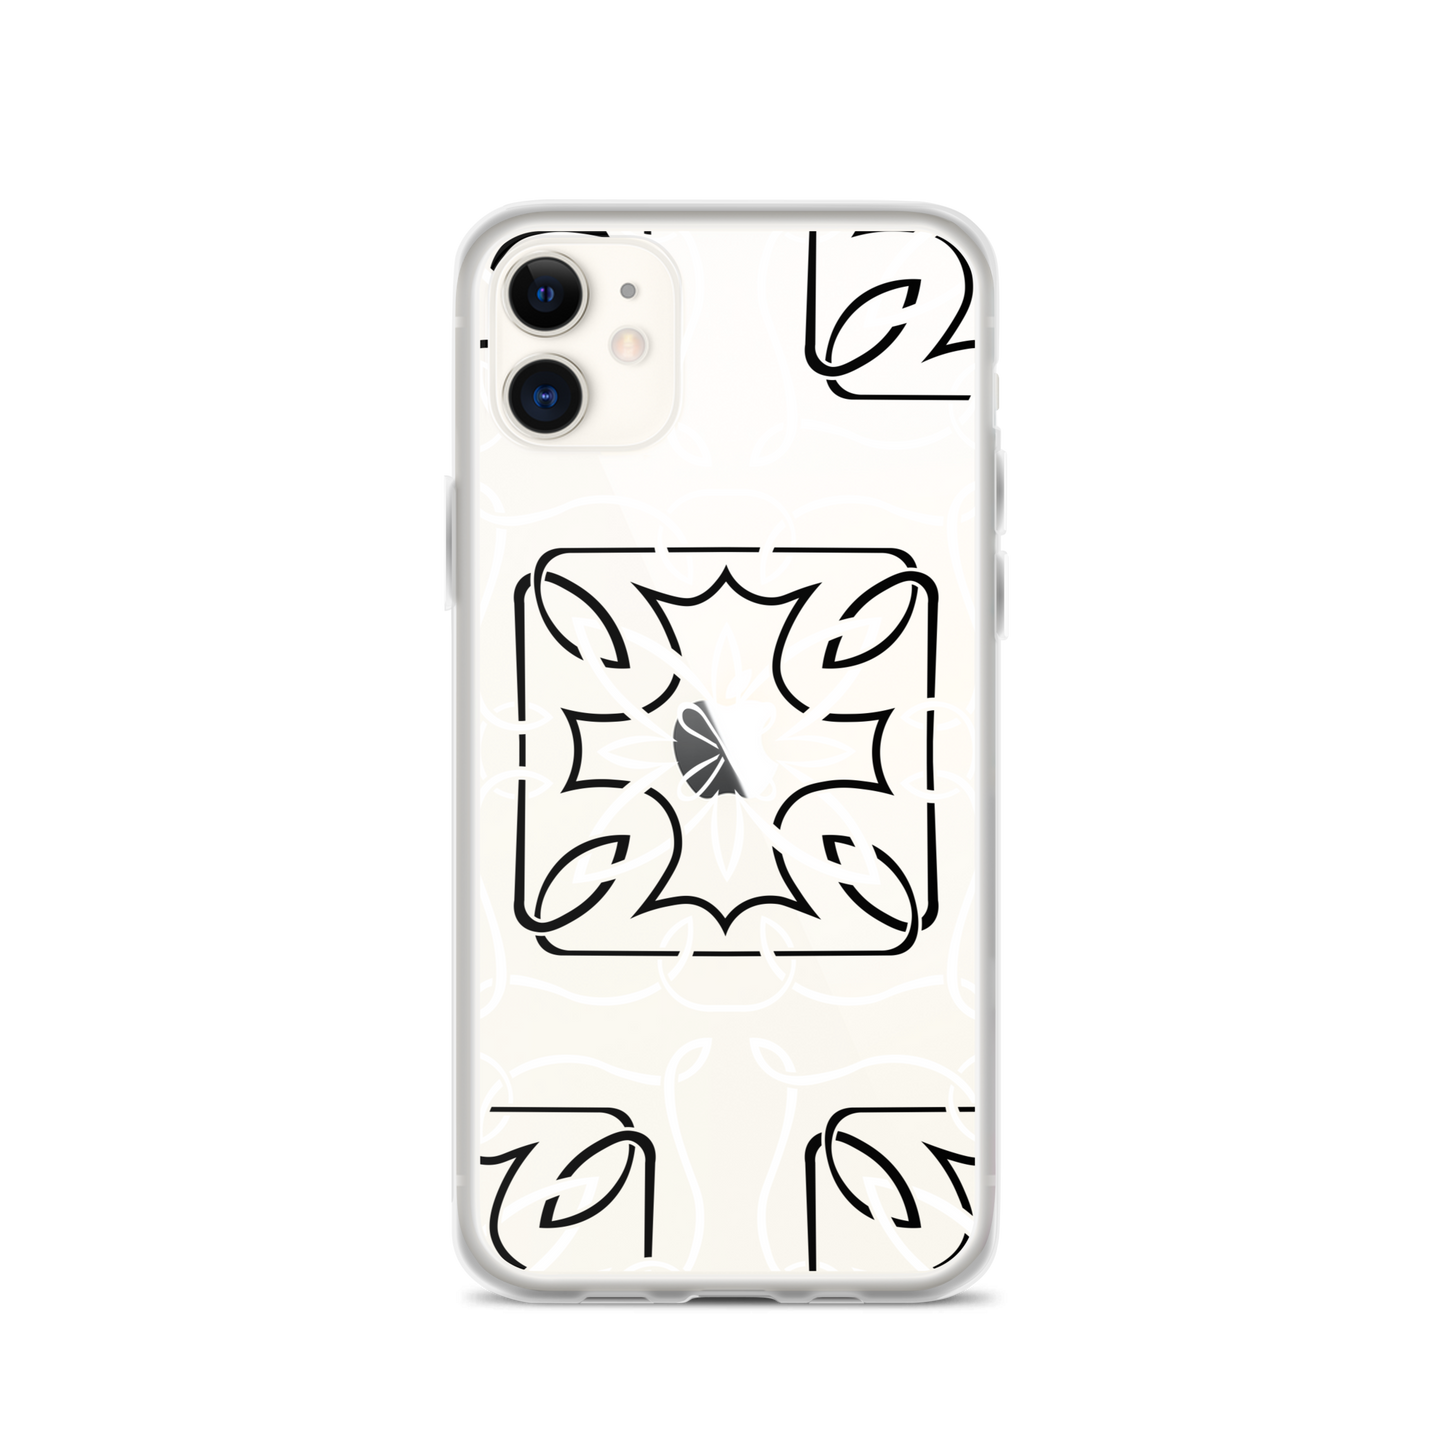 iPhone-Hülle Celtic 3